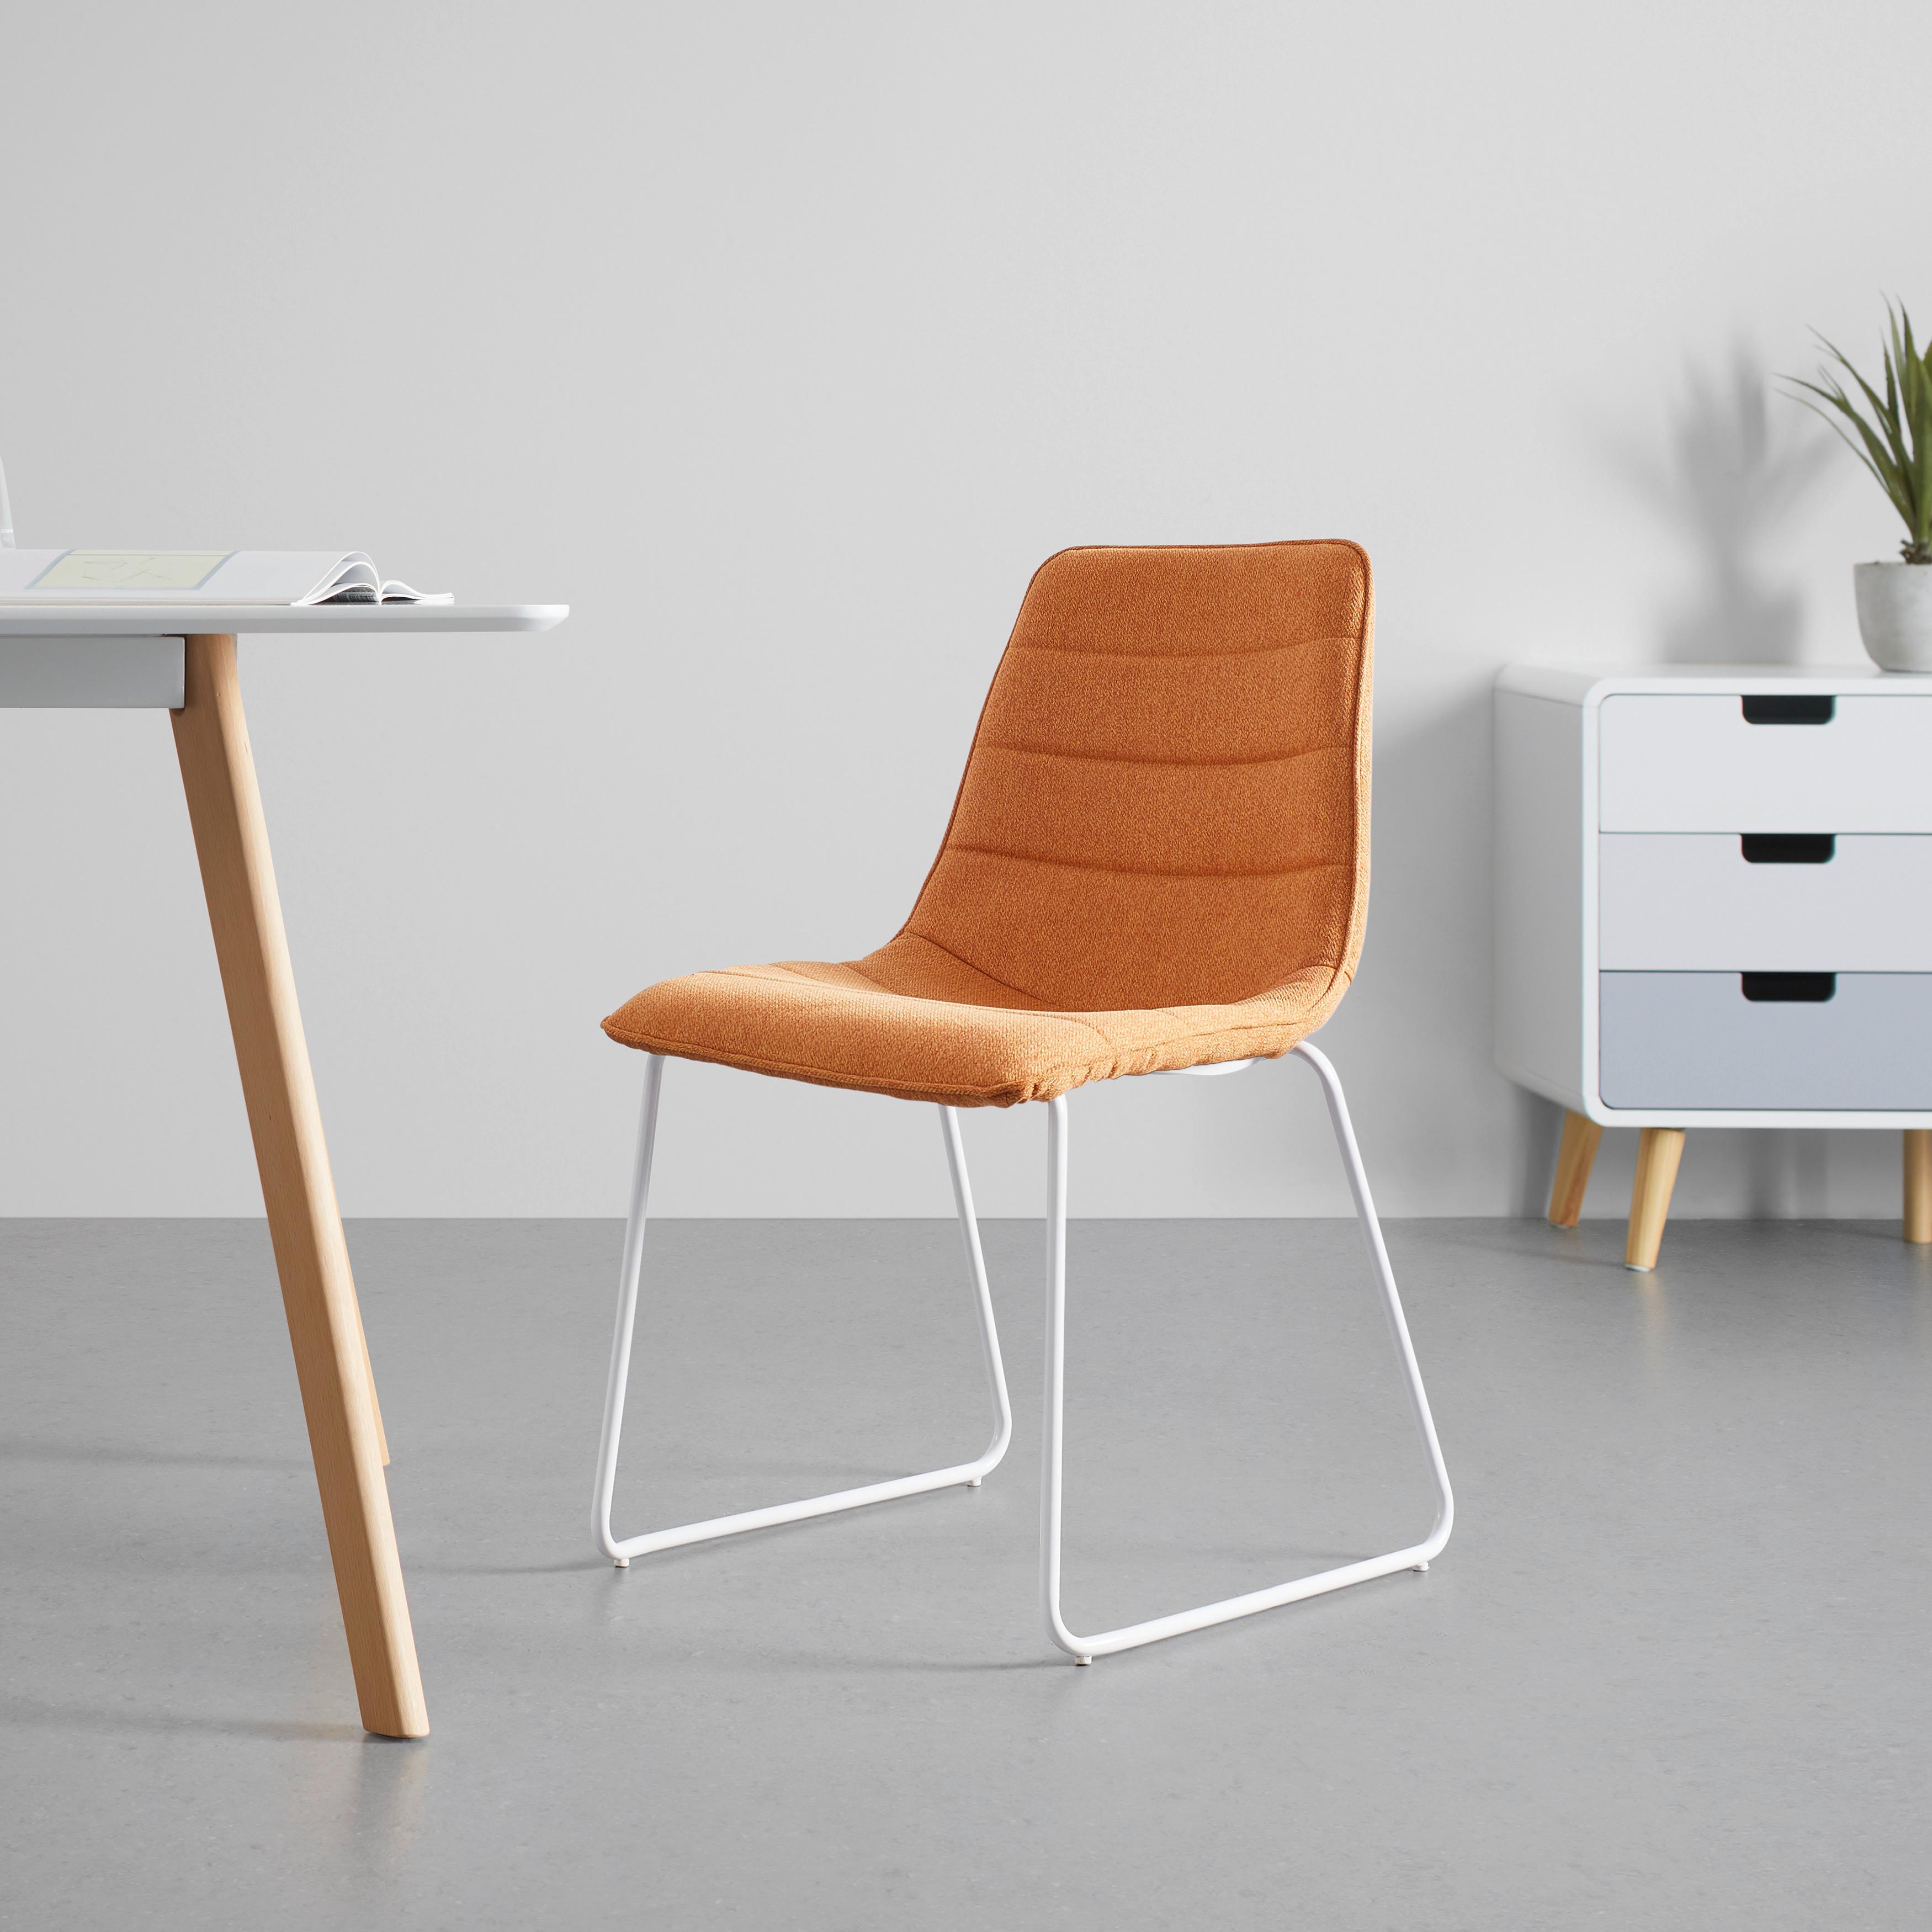 Stuhl "Mira", Webstoff, orange, Gepolstert - Orange/Weiß, MODERN, Textil/Metall (47/81,5/54,5cm) - Bessagi Home